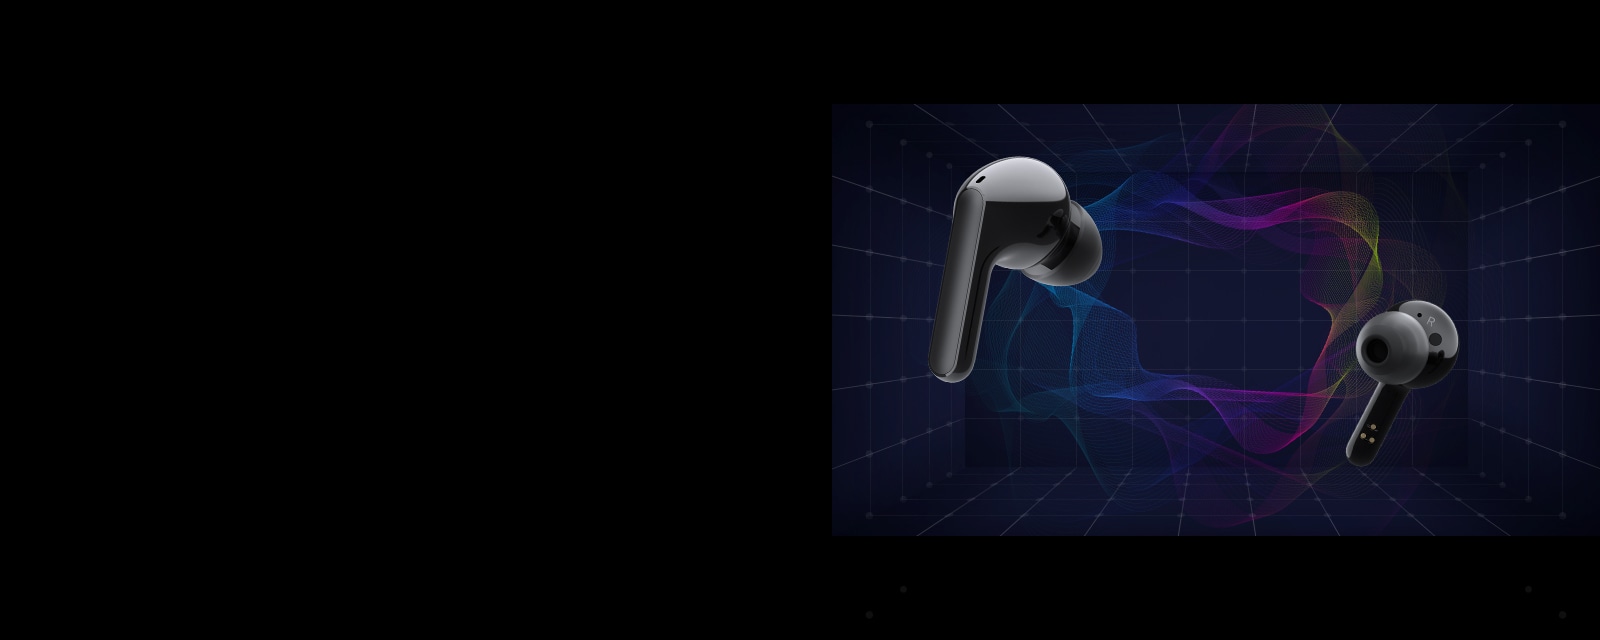 Slika dviju slušalica kako plutaju u virtualnom prostoru s raznobojnim svjetlom koje okružuje prostor